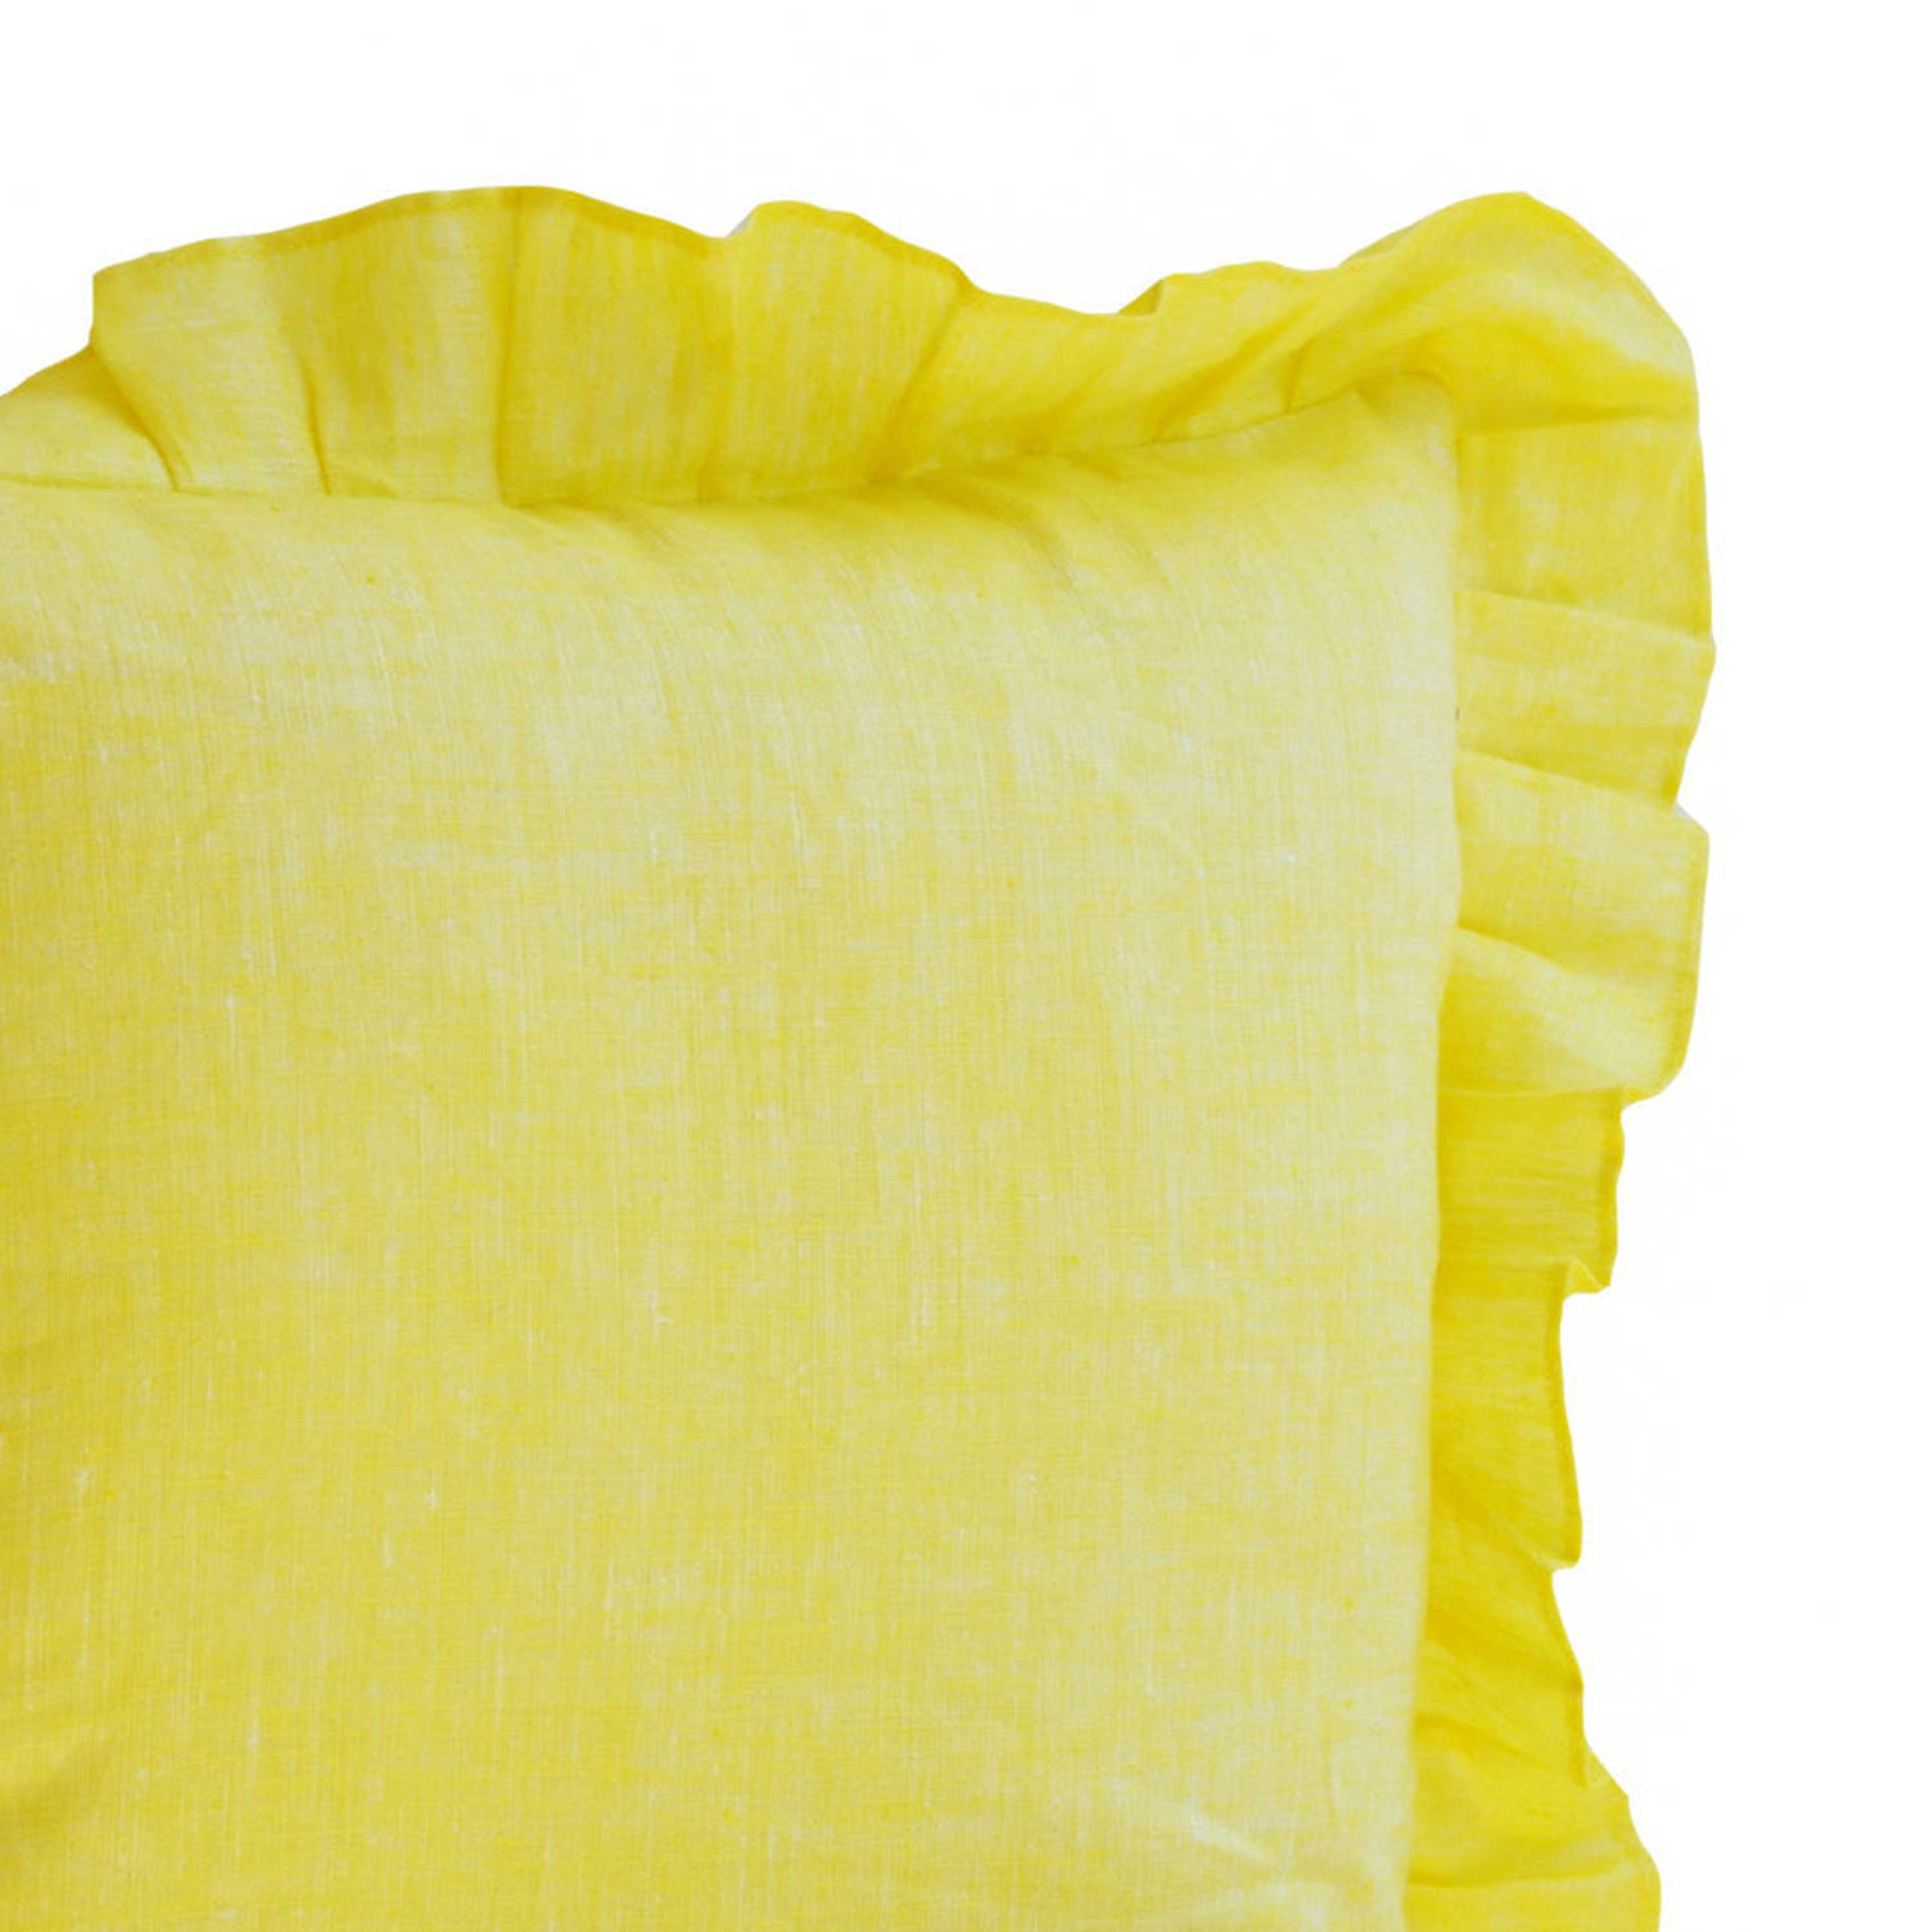 Seville Throw pillows - Sunshine Yellow Pillows- Linen Blend Ruffled Edge Pillow- 16x16- Gift- Linen Decorative Pillows-Seville Linen Pillow